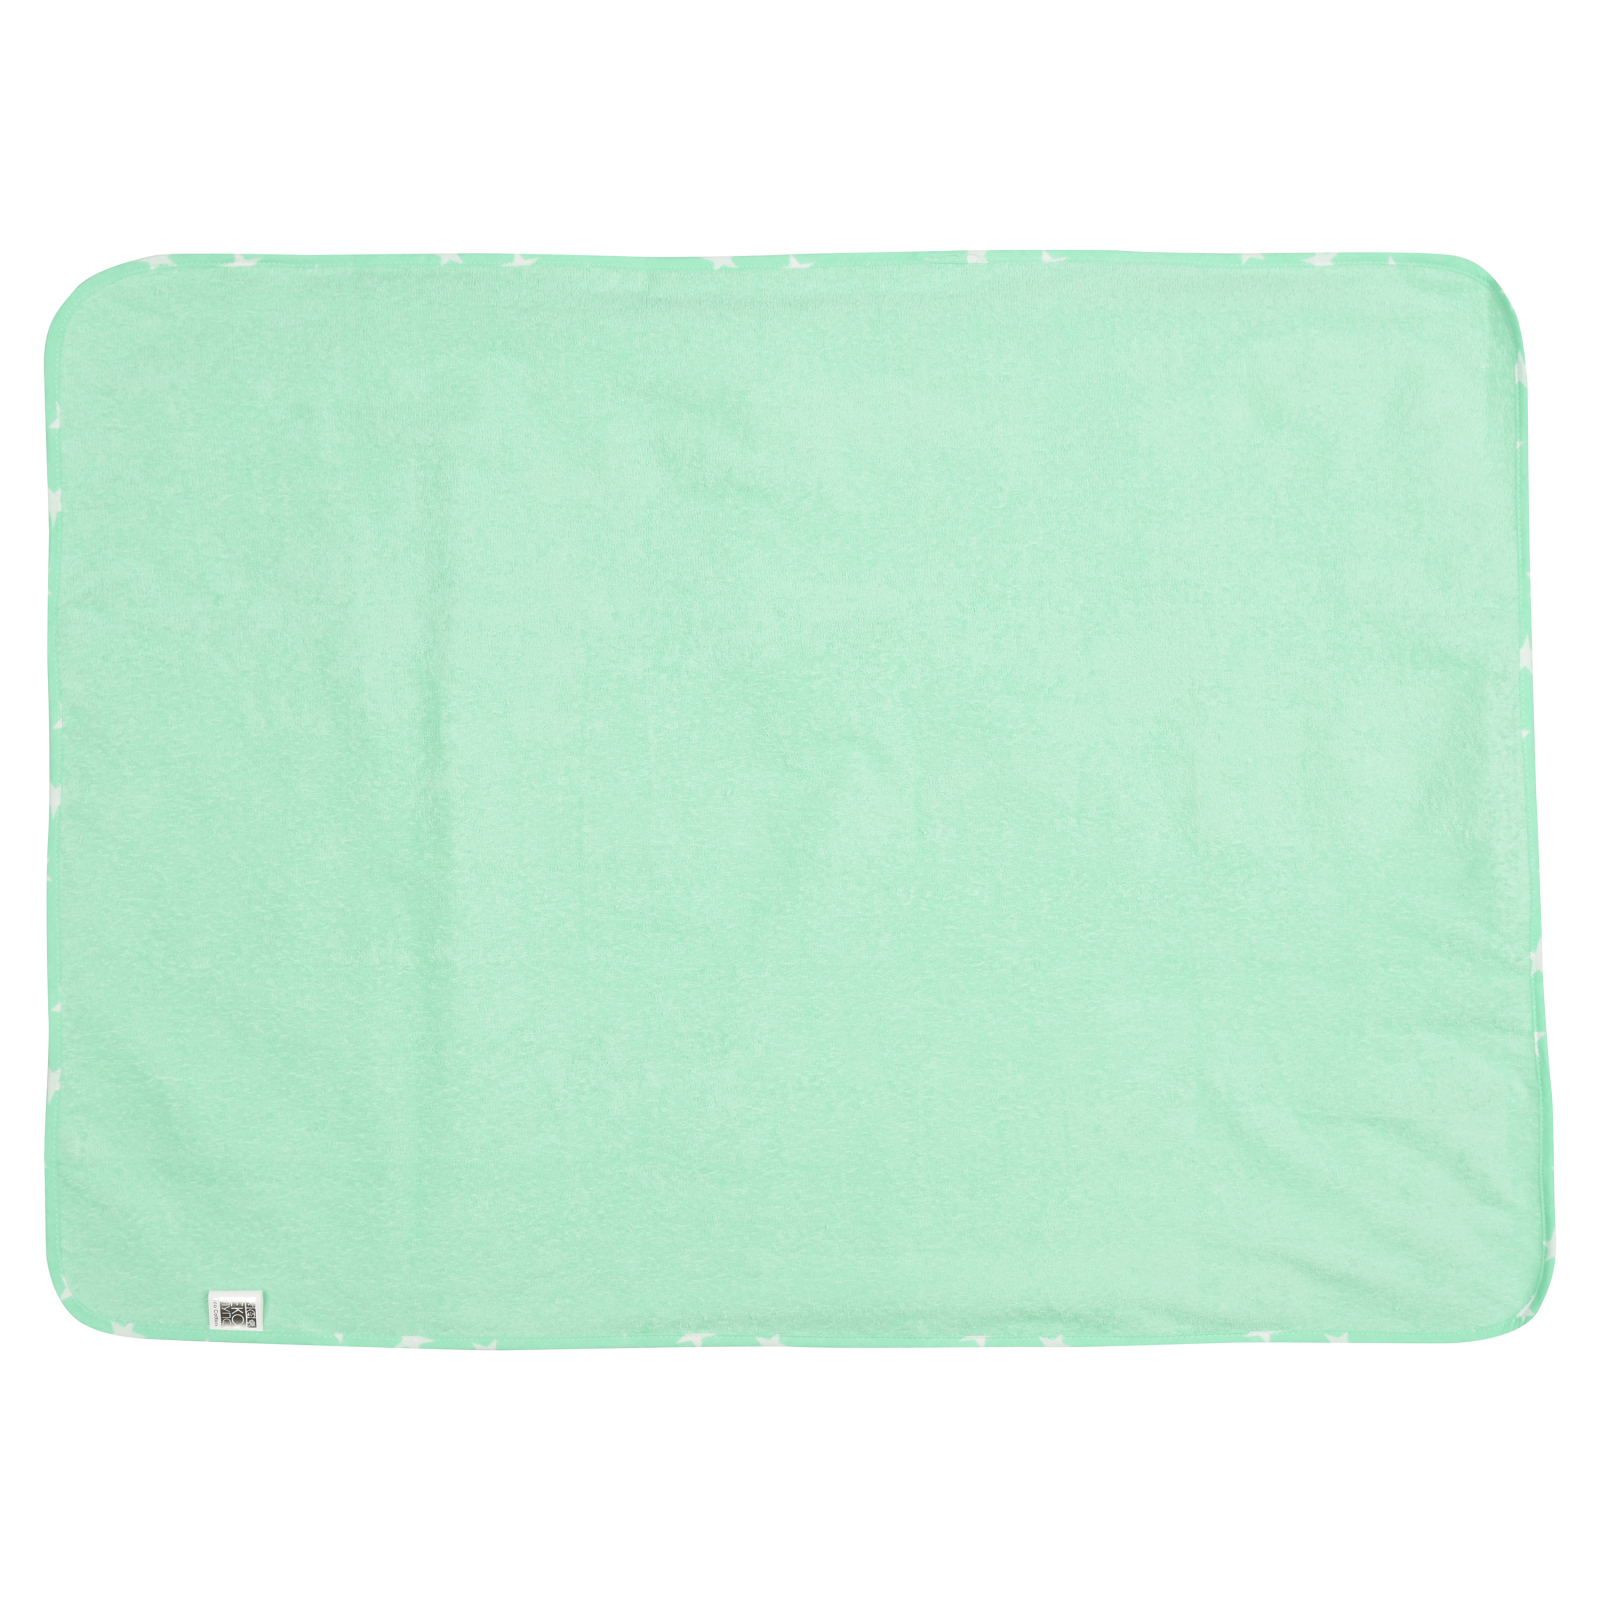 Пеленки для младенцев Еко Пупс Eco Cotton непромокаемая двухсторонняя 65 х 90 см ментол Звездочки (EPG10N-6590zk) изображение 2